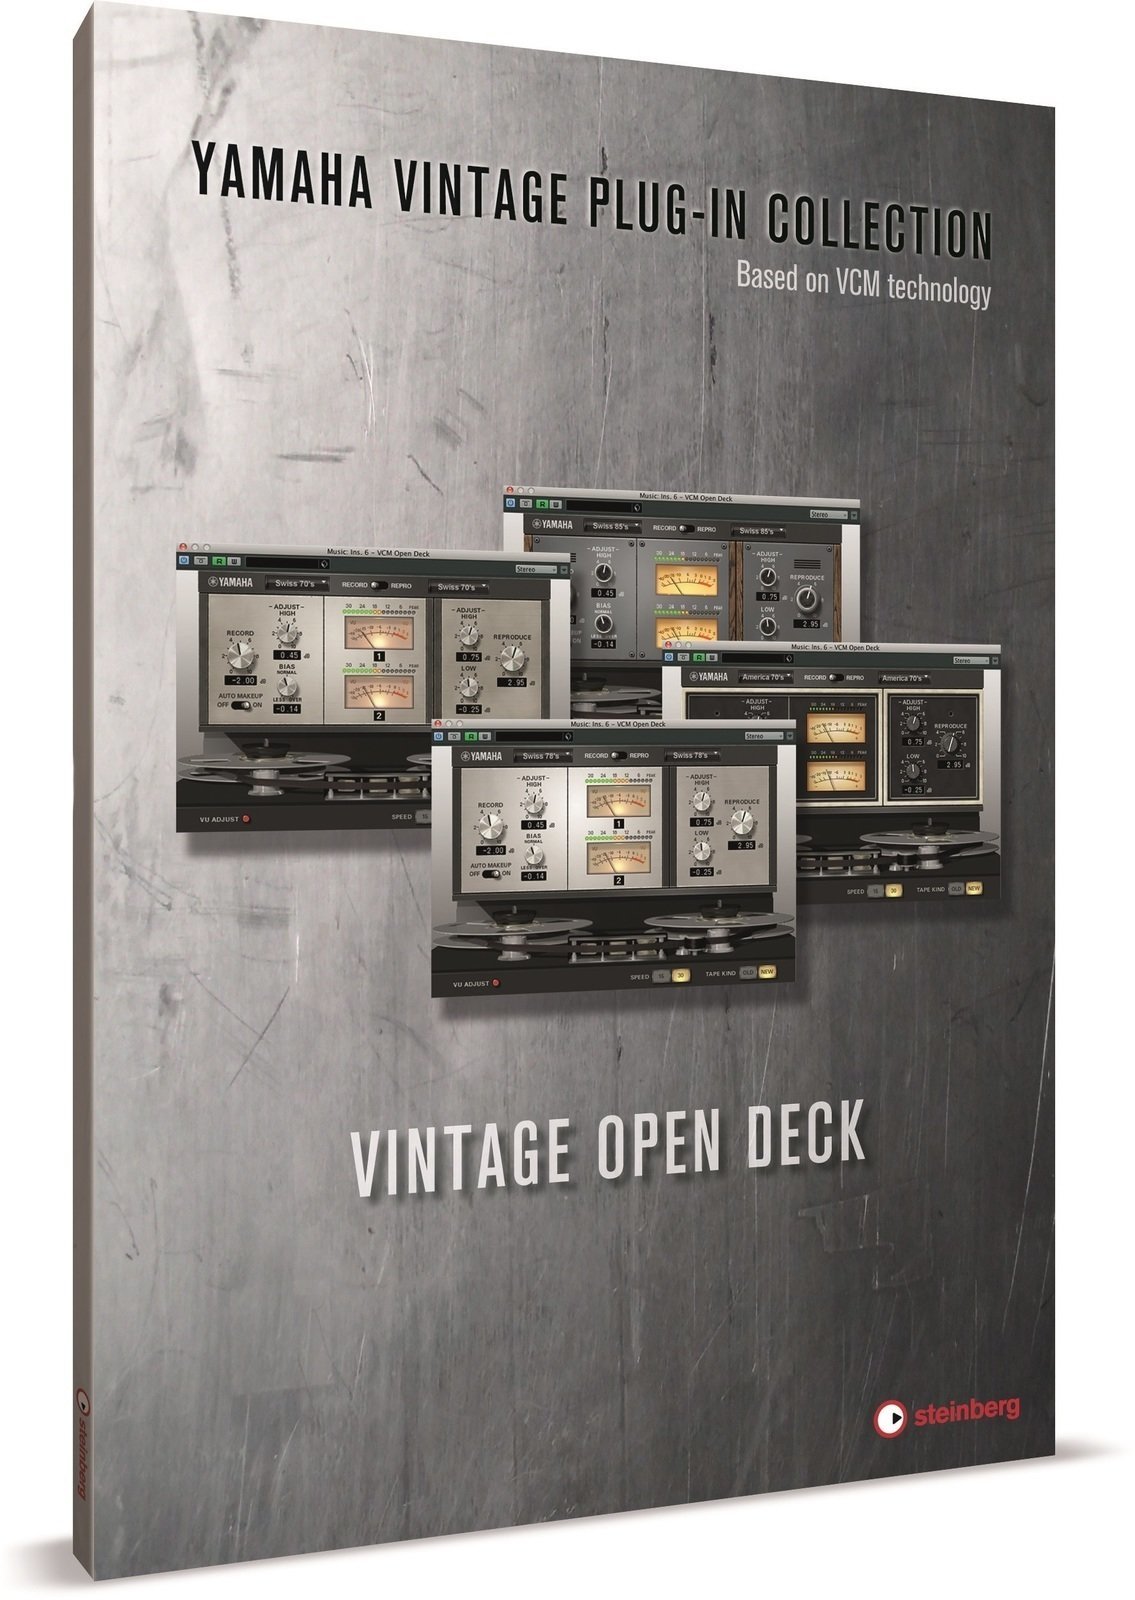 Instrument virtuel Steinberg Vintage Open Deck